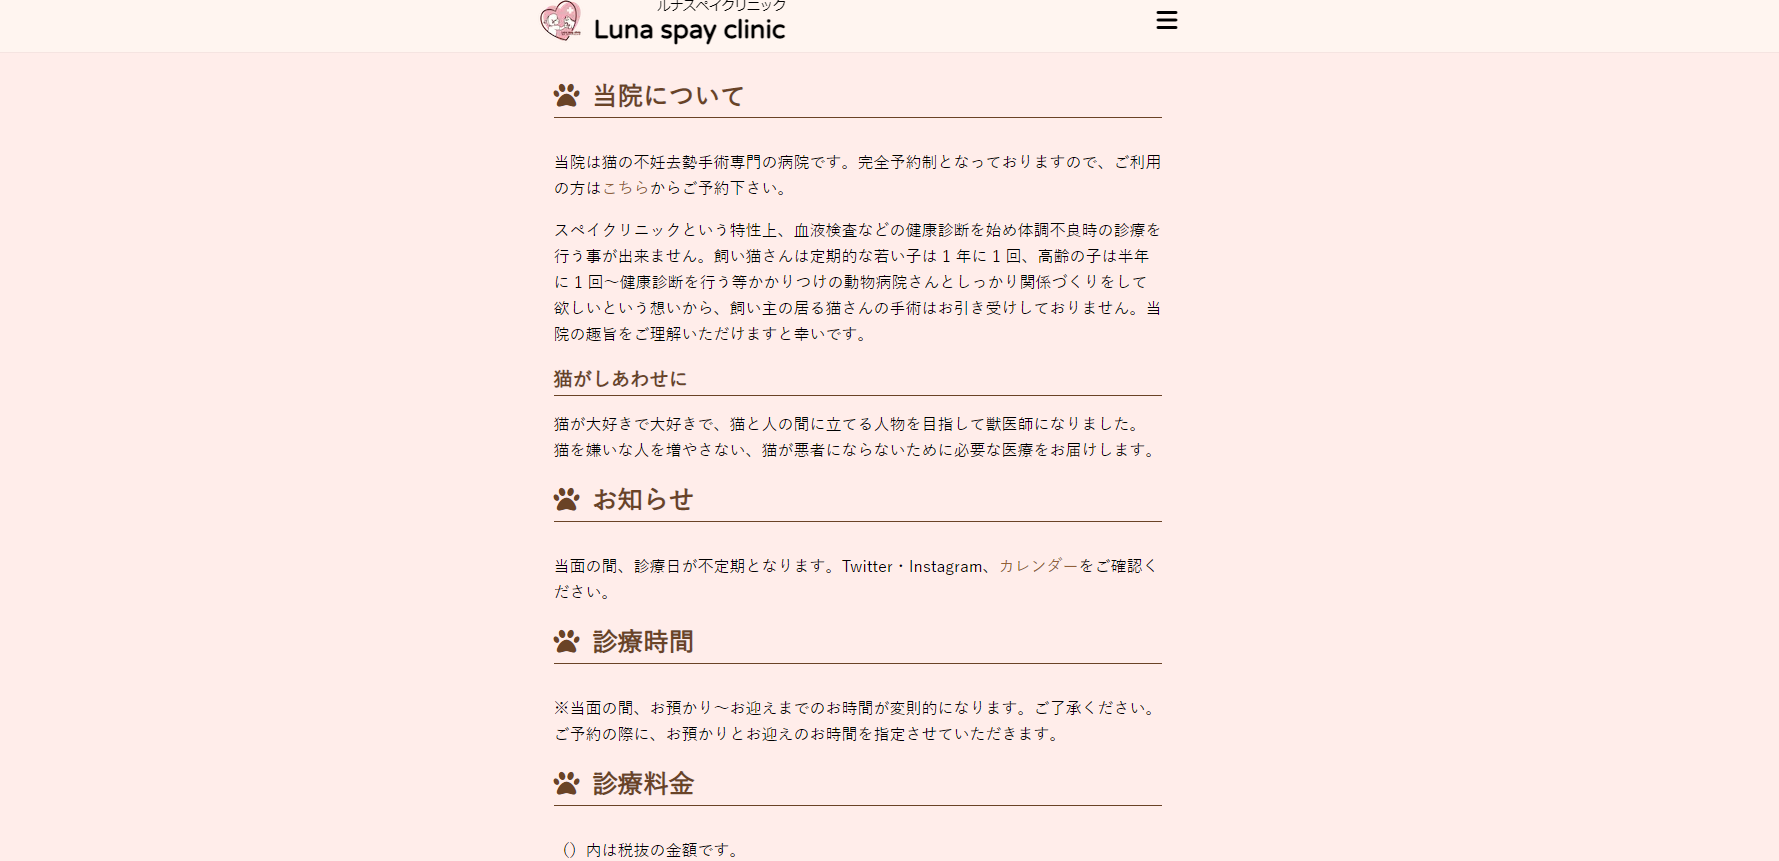 Luna spay clinic 中台診療所（千葉県）が協力病院に参加 – どうぶつ基金